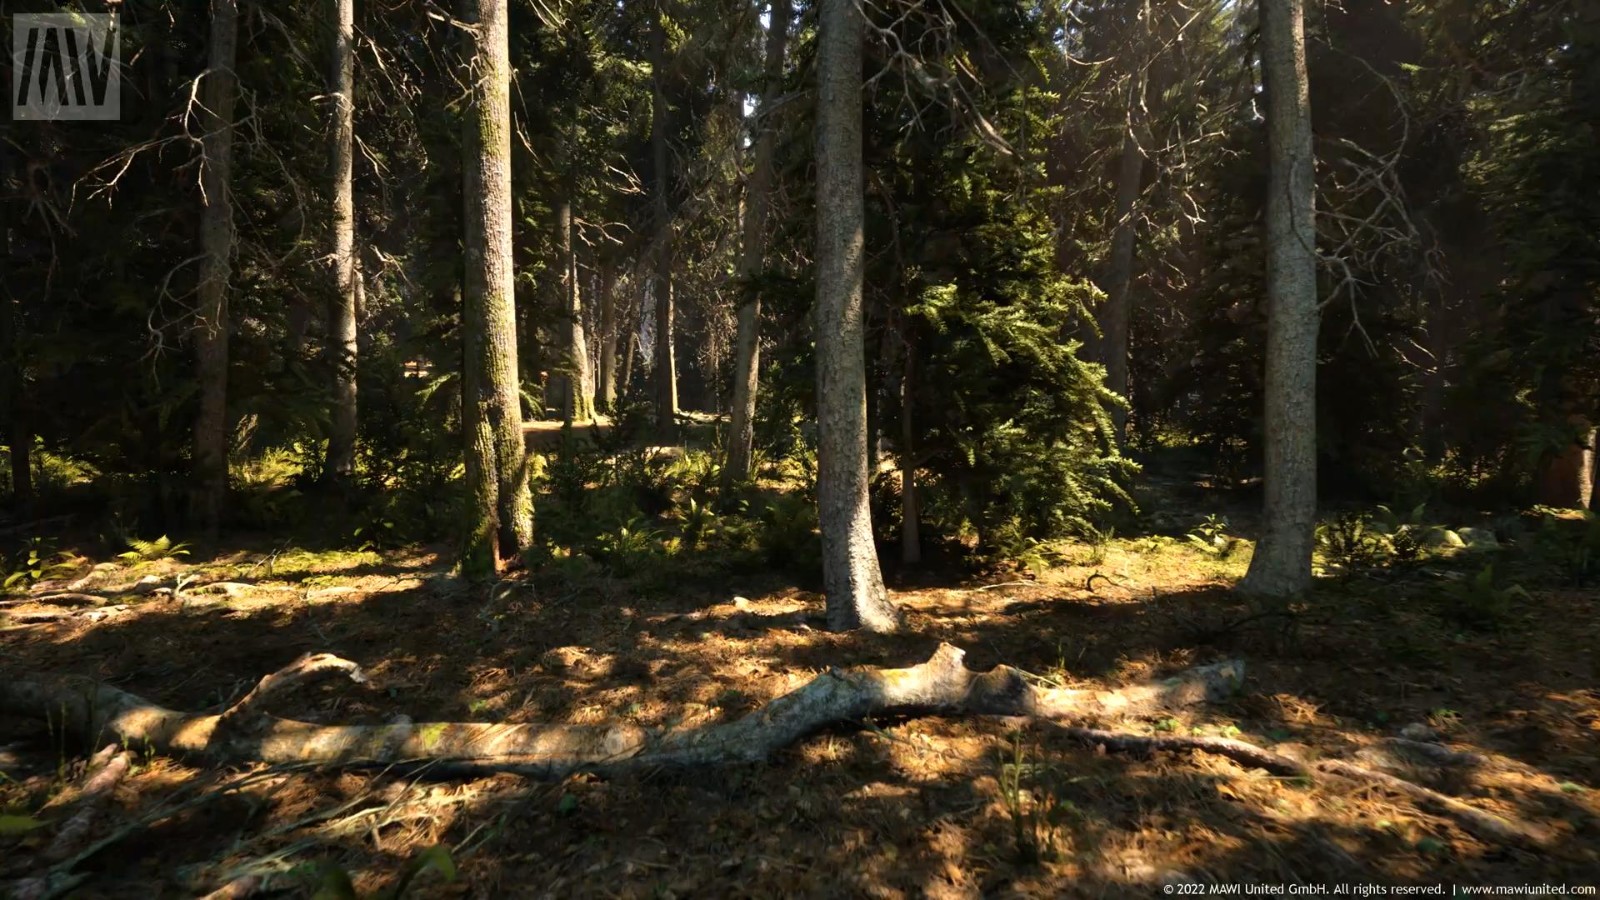 虛幻5引擎「針葉林」技術演示 畫面過於逼真